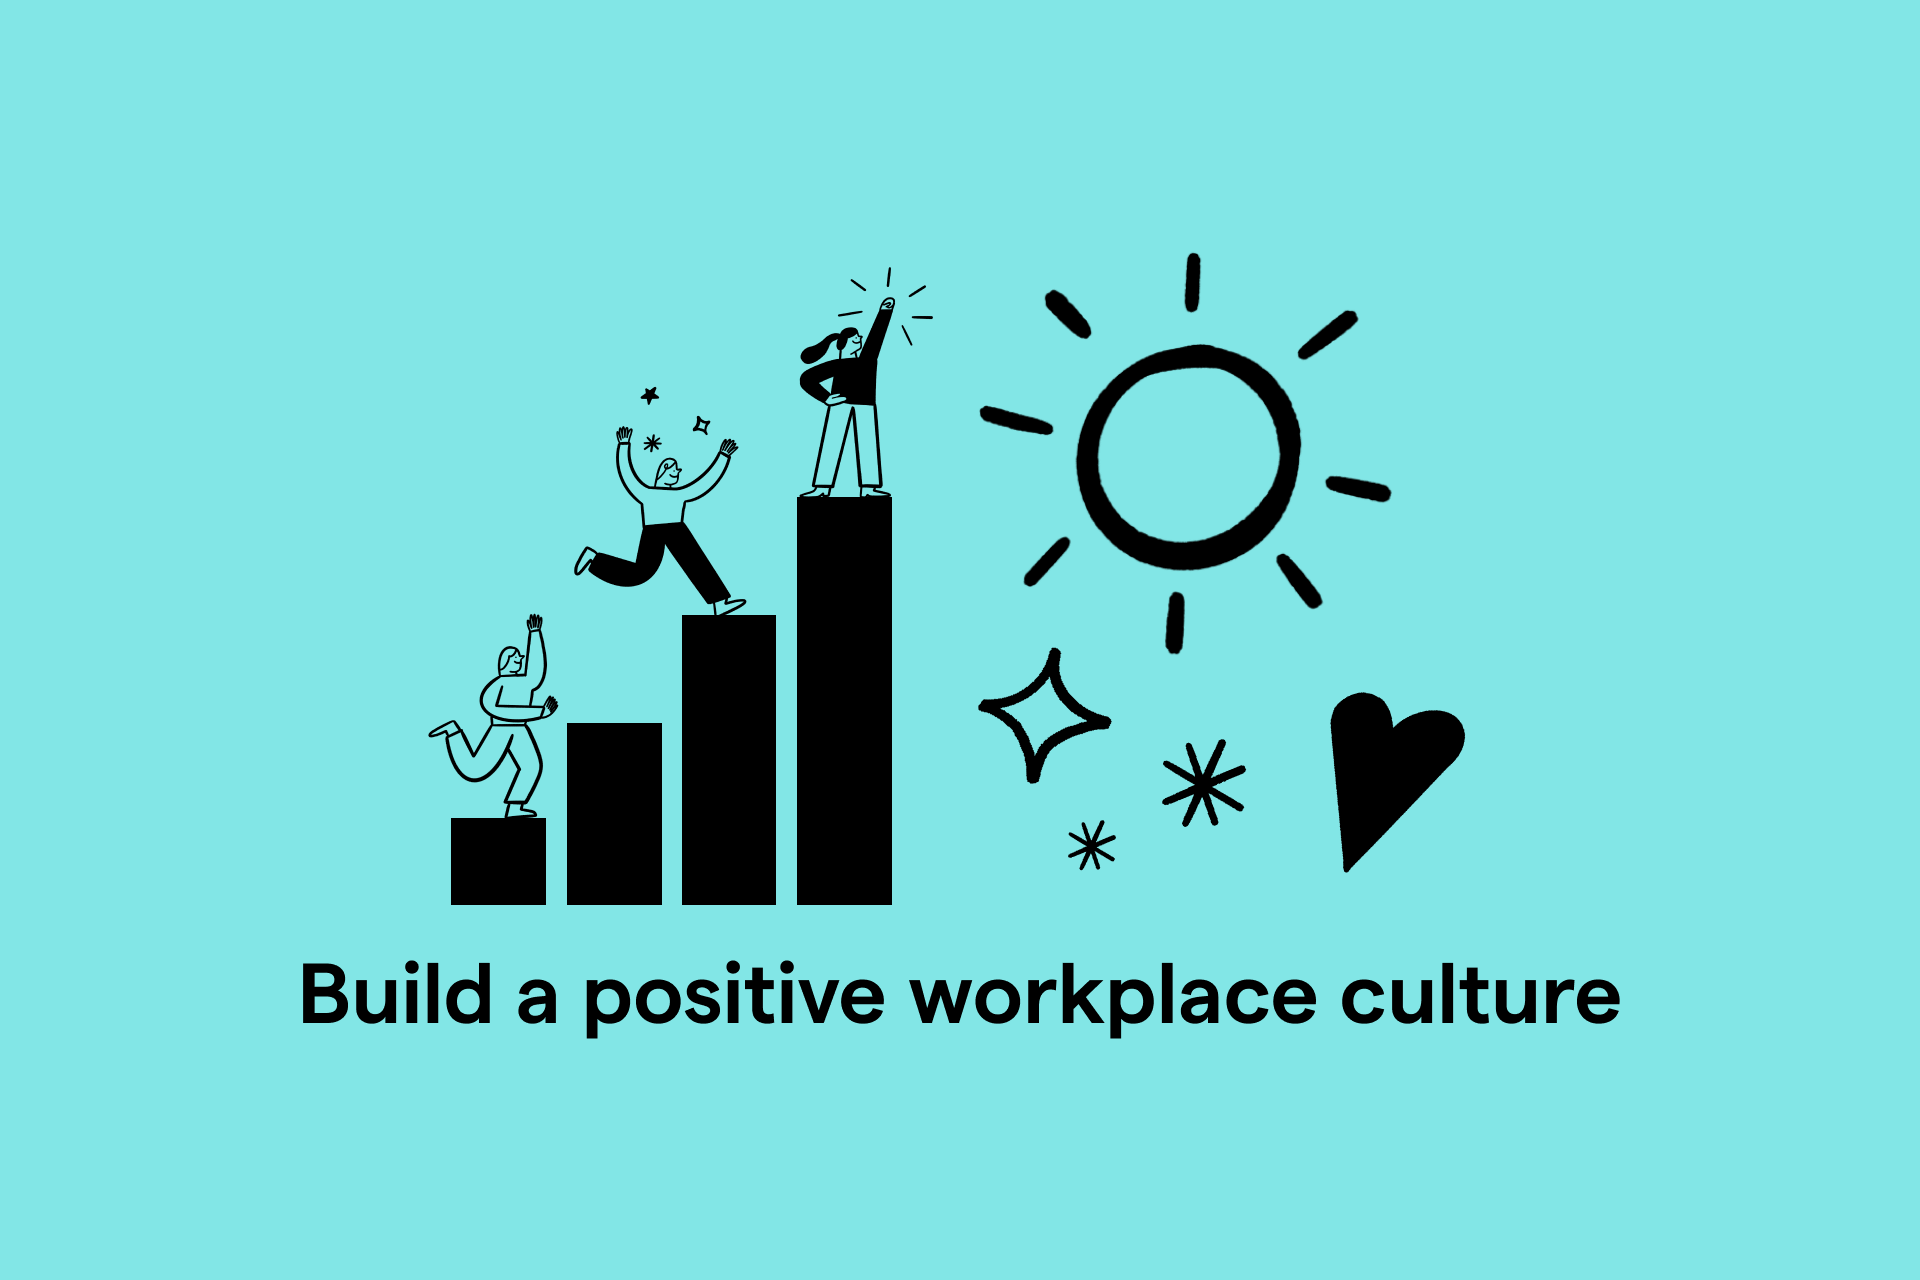 كيف يمكن خلق ثقافة شركة إيجابية في مكان العمل؟